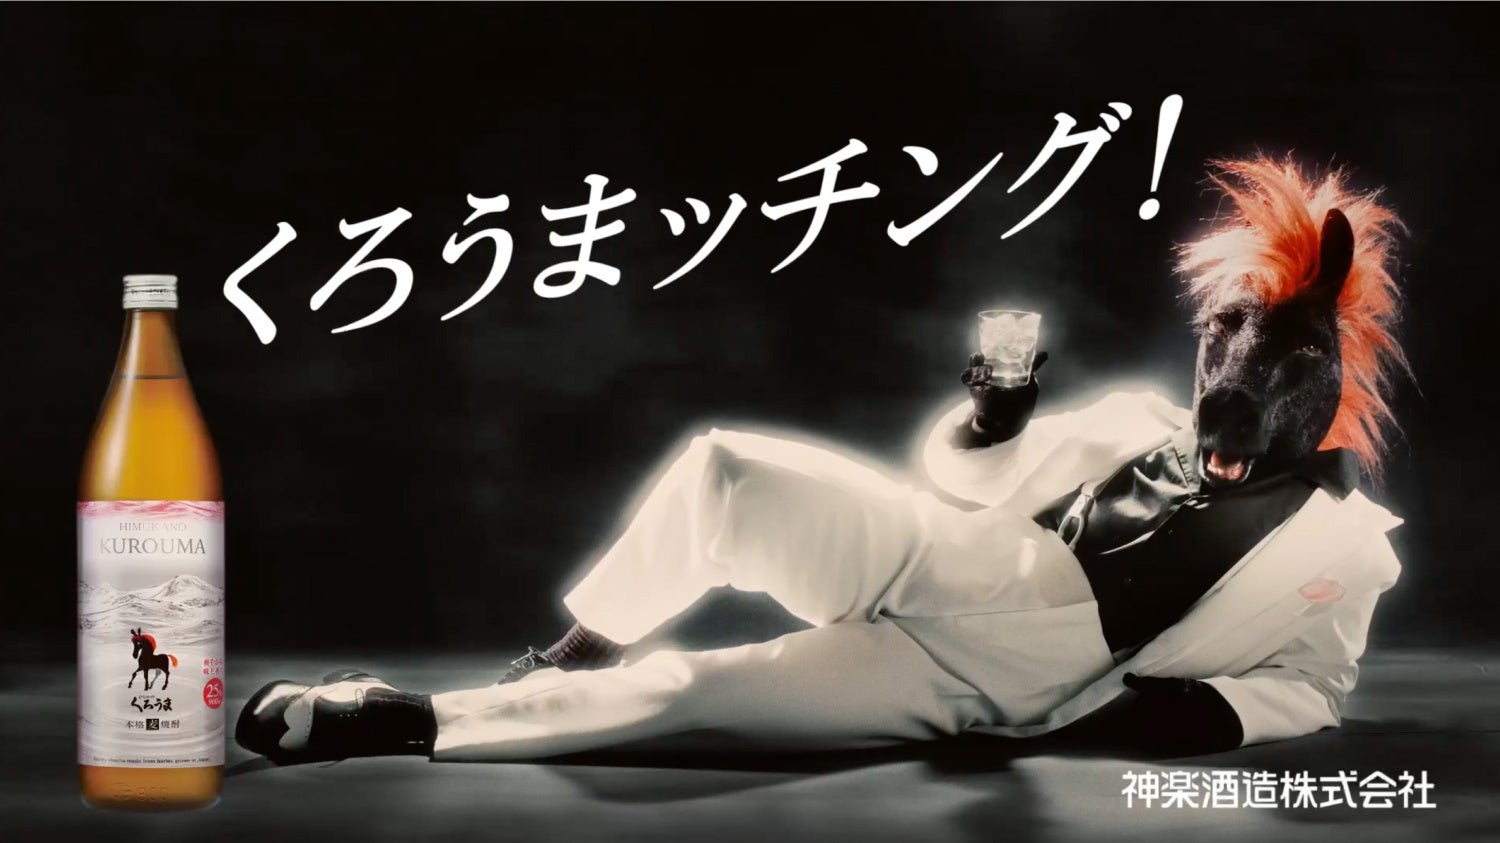 本格麦焼酎「ひむかのくろうま」37年ぶりとなる新パッケージ発売　「塩が合うなら、うまが合う。」をコンセプトに謎の生命体MCウマーがコミカルなダンスを披露する新CMが西日本エリアで放映開始